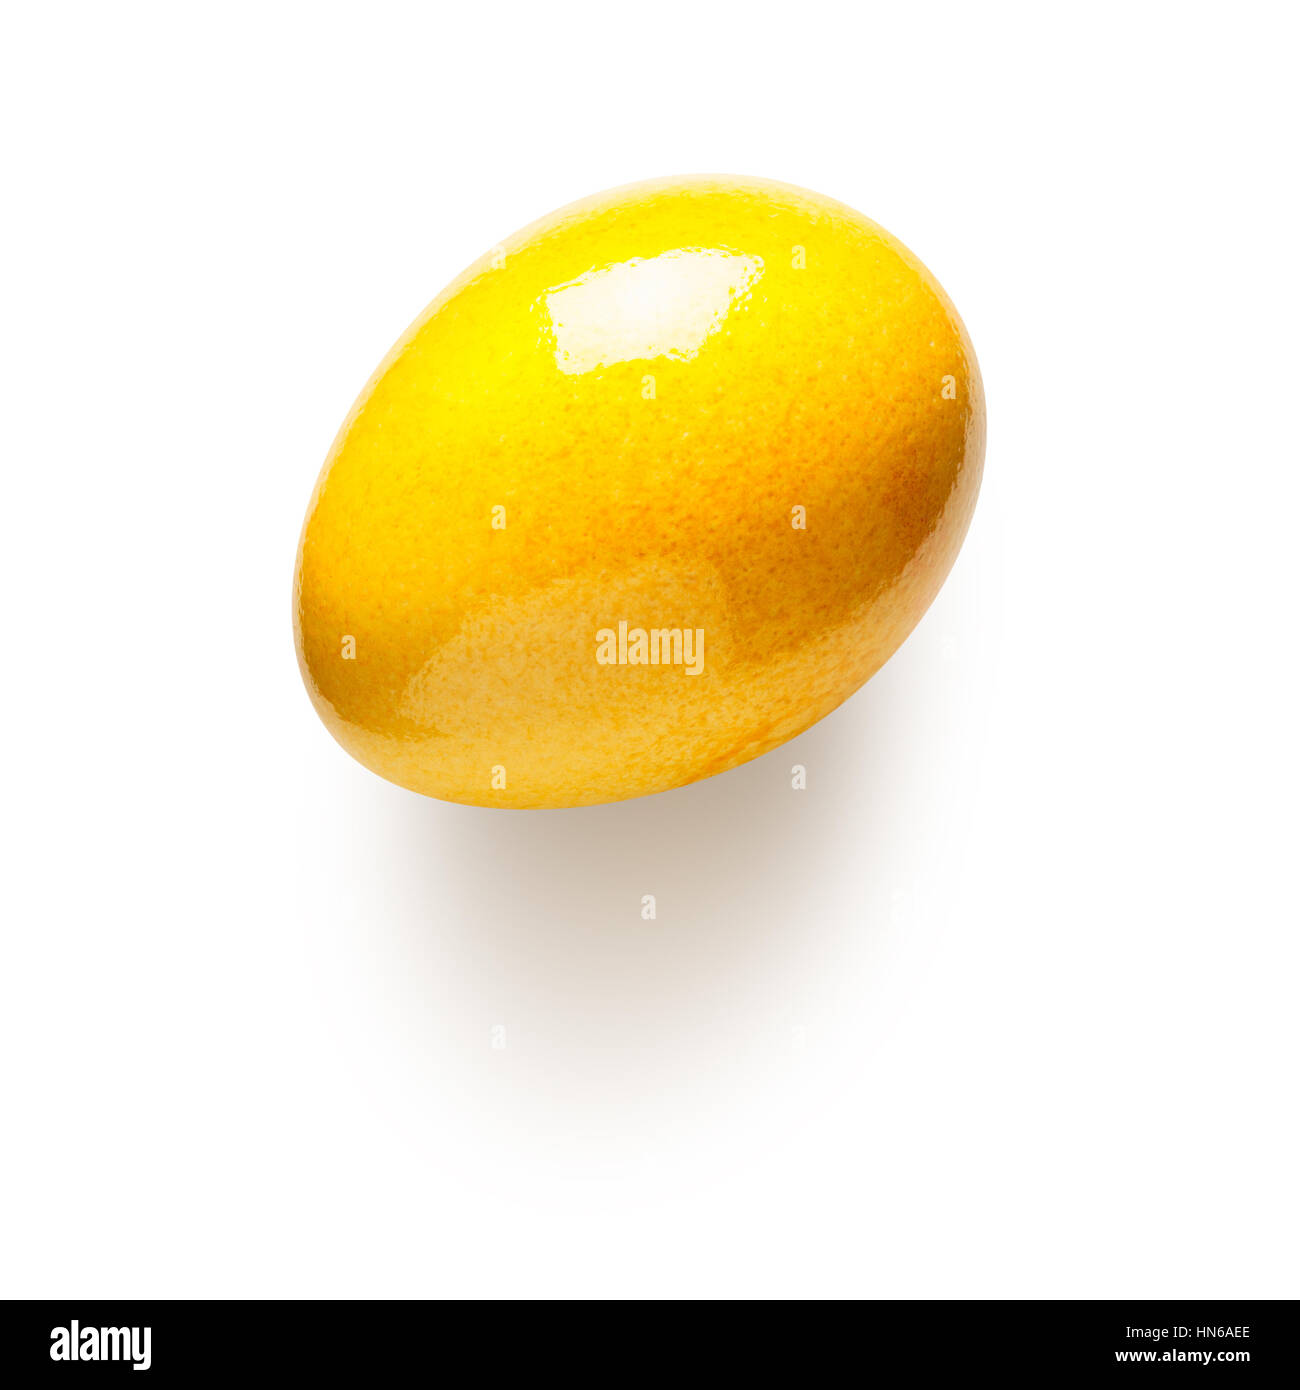 Huevo de Pascua pintados de amarillo aislado sobre fondo blanco. Símbolo de vacaciones. Objeto con trazado de recorte, vista superior, laicos plana Foto de stock